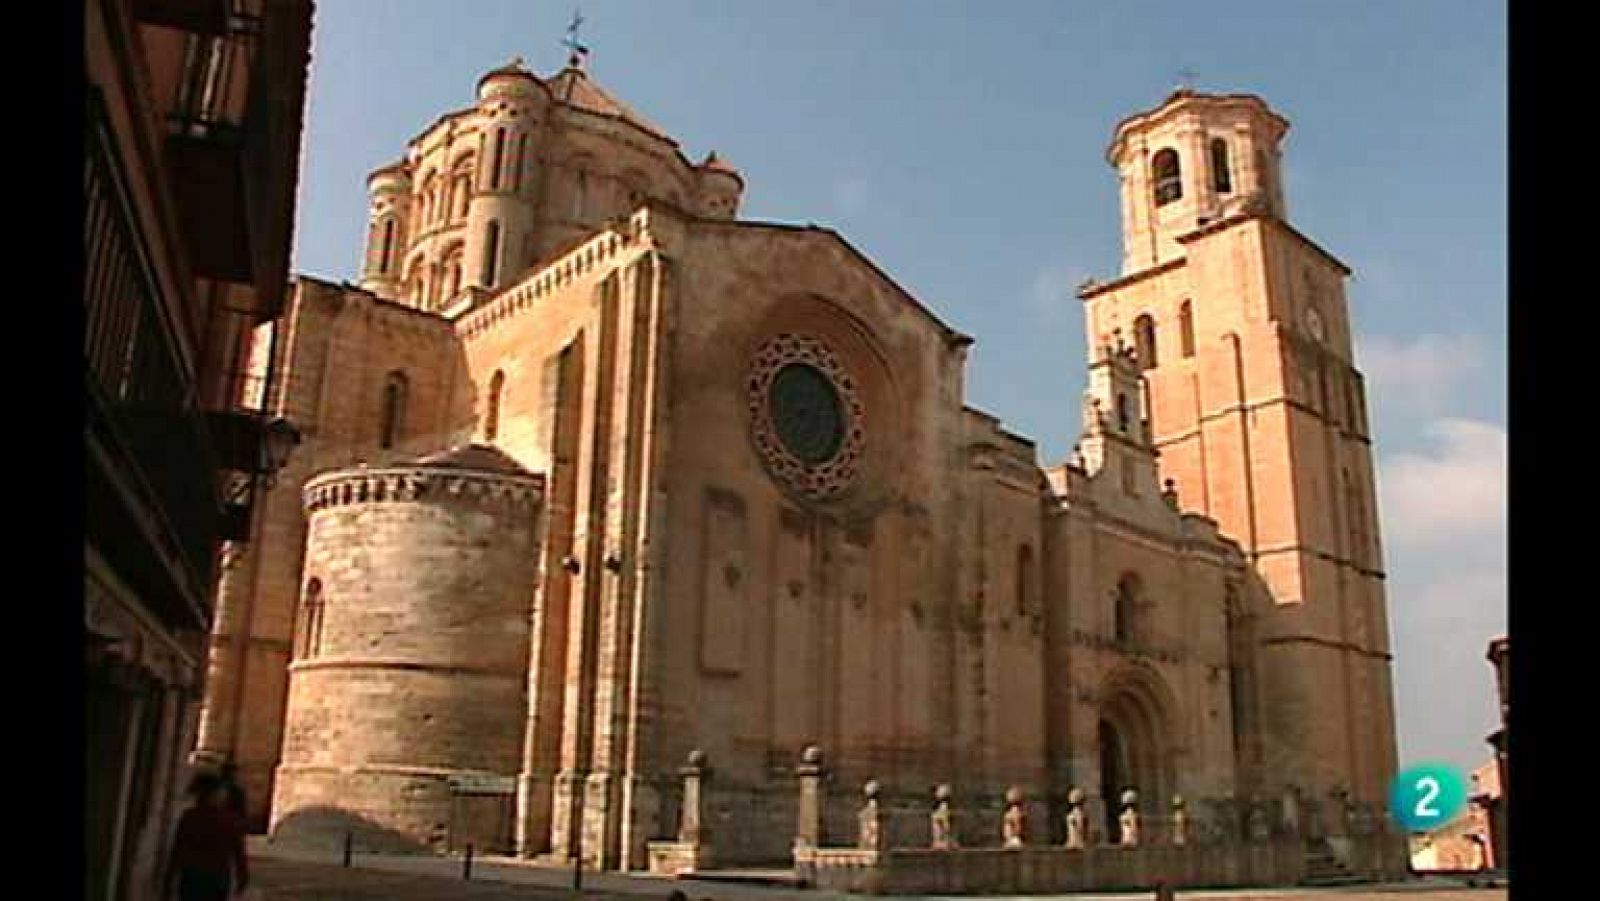 Las claves del románico - Catedrales y colegiatas románicas